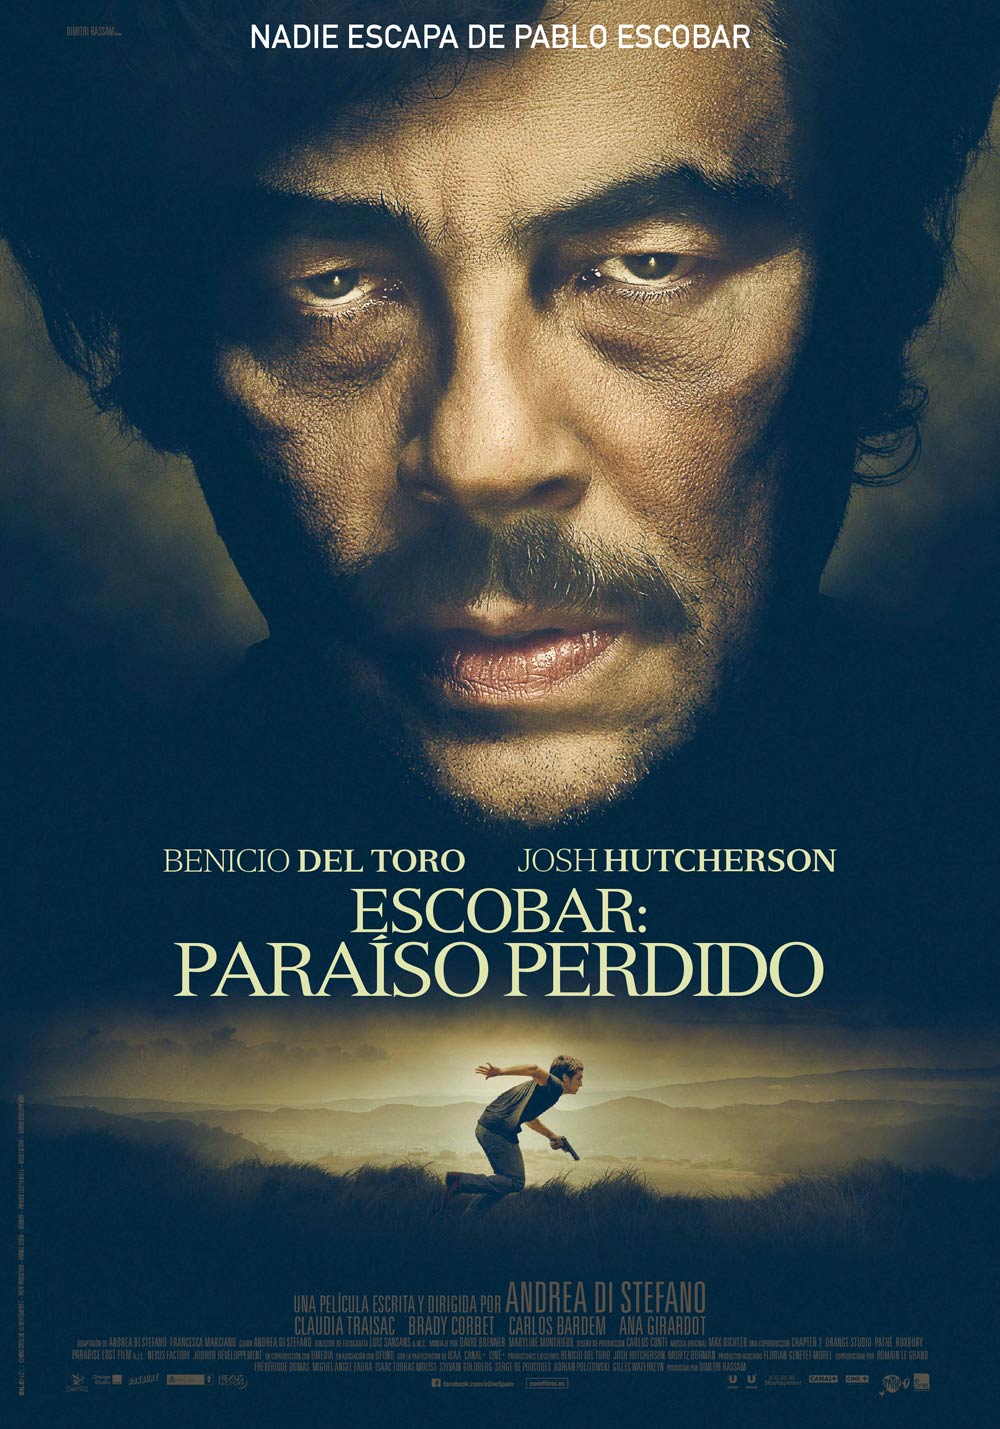 Influencia comida fertilizante Escobar: Paraíso perdido, comentario sobre la película